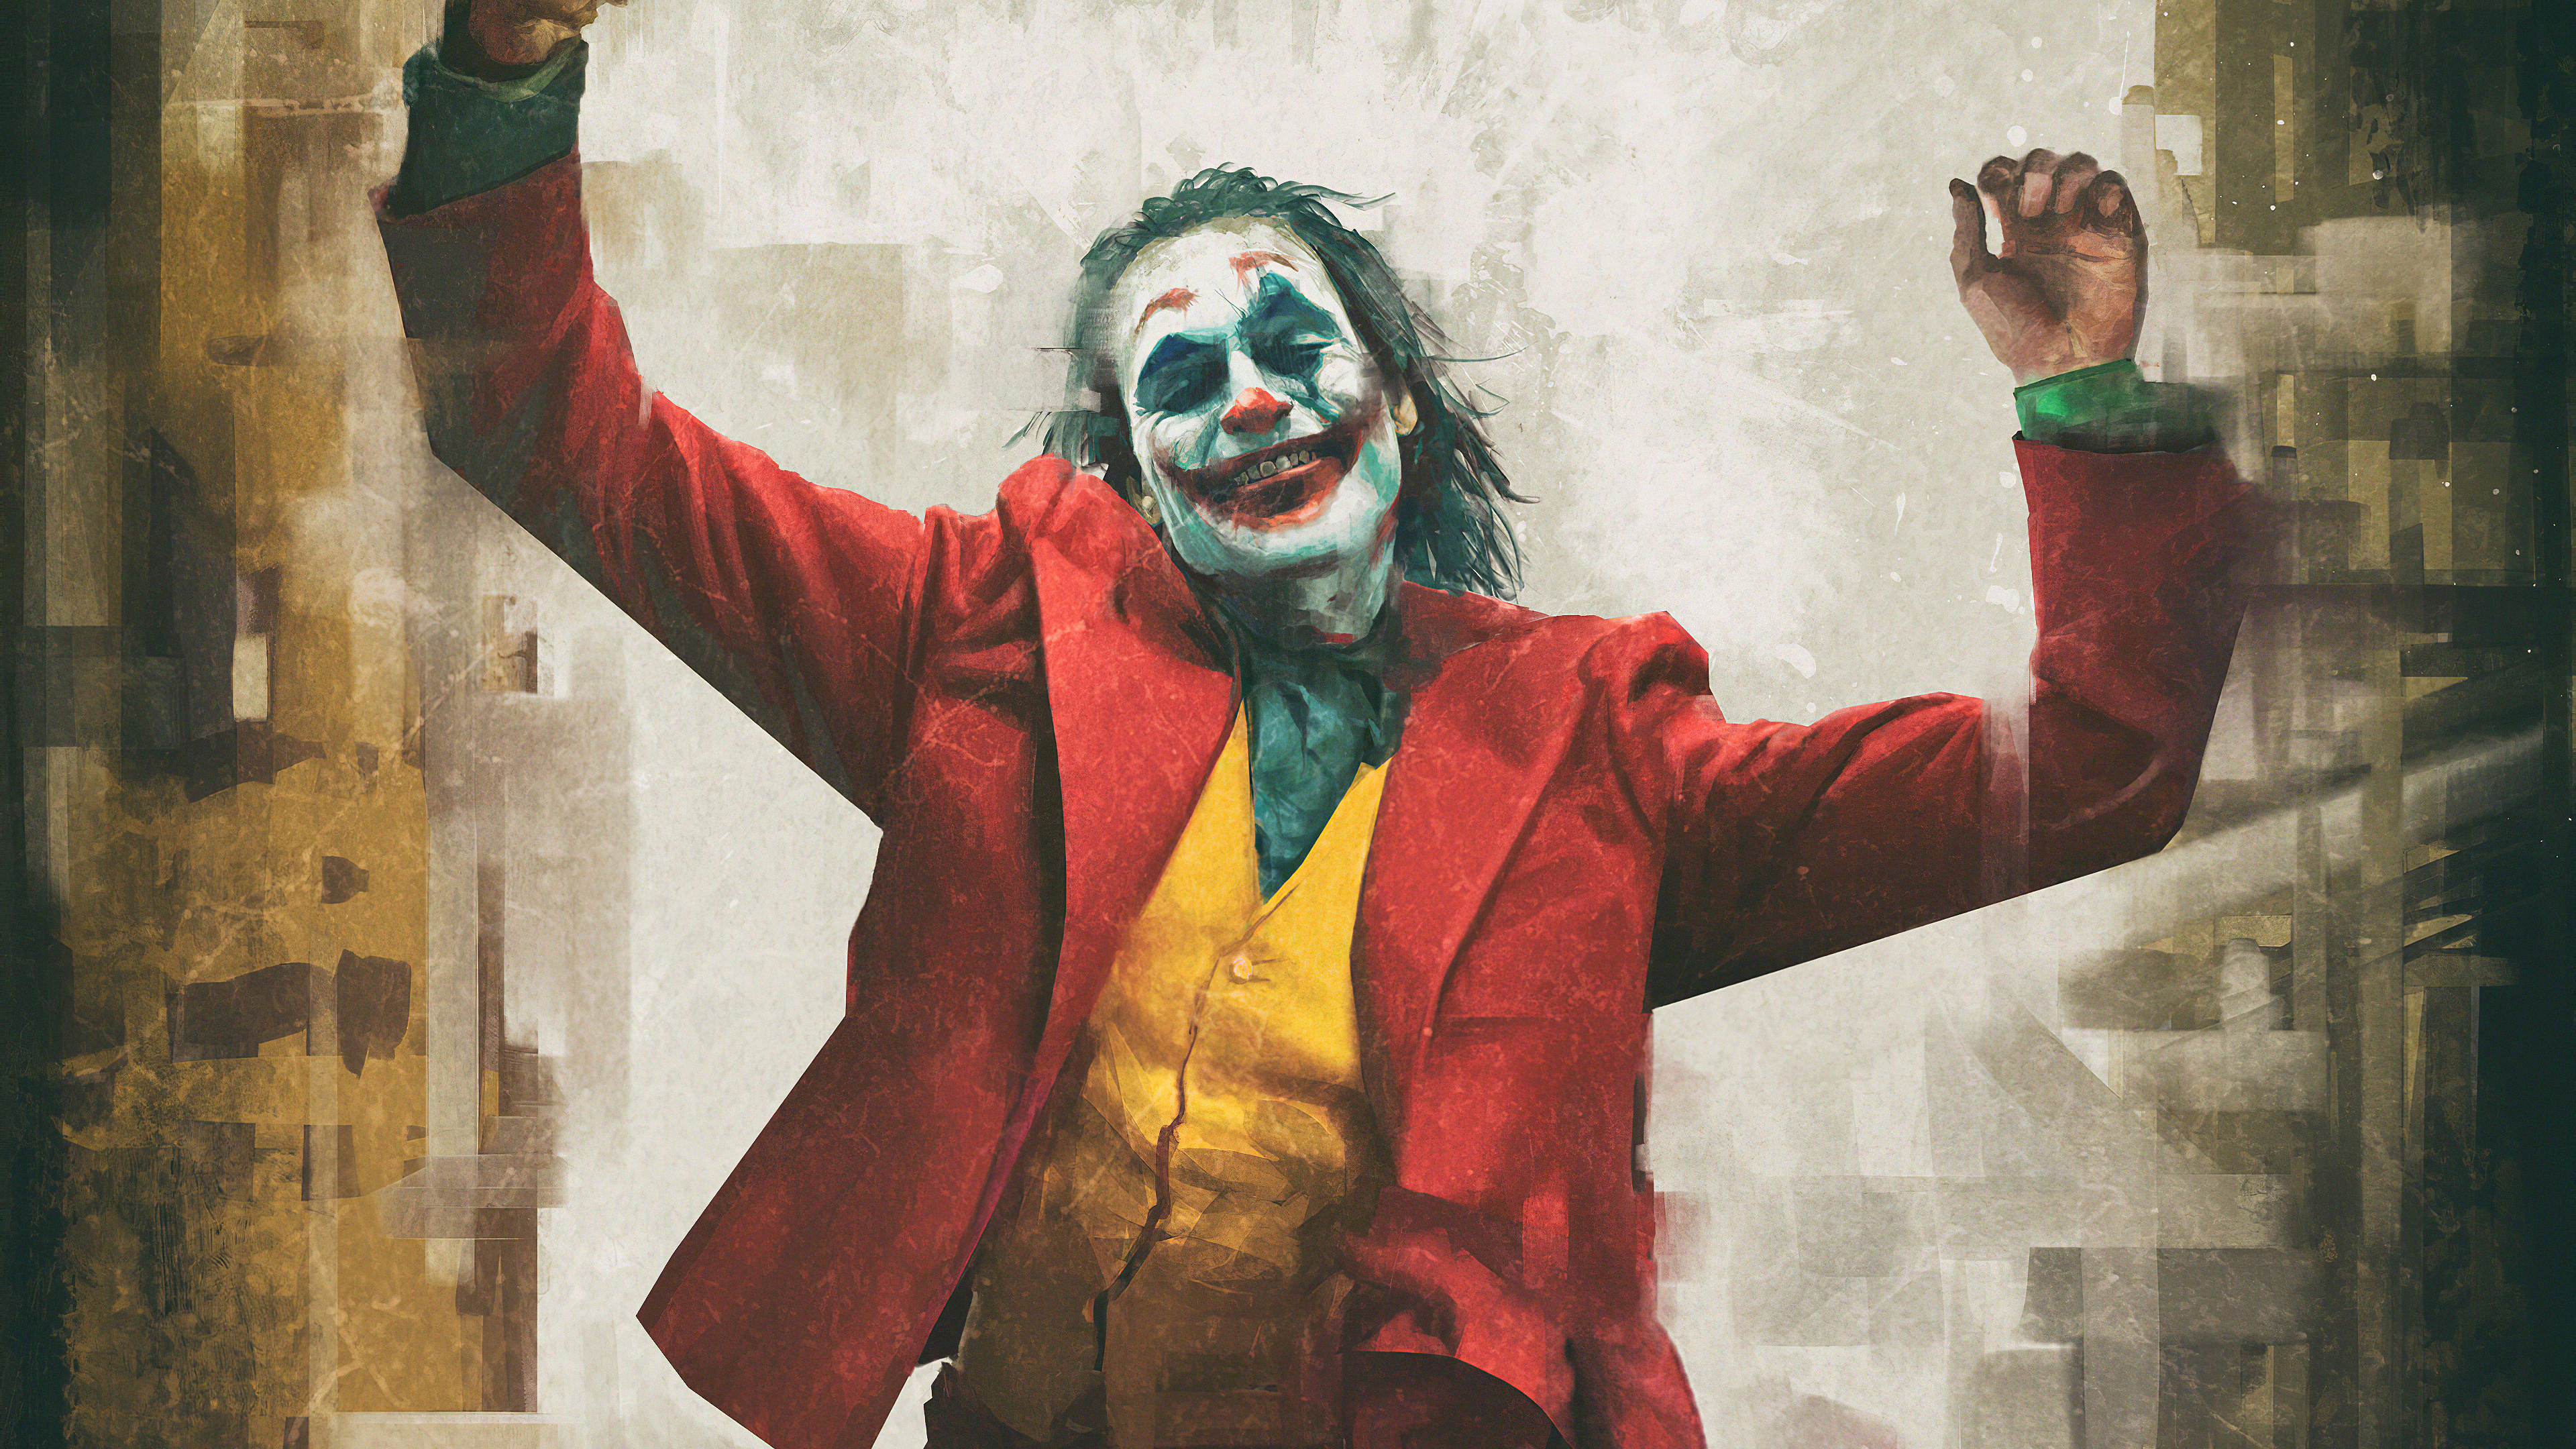 Joker 4k Ultra HD Wallpaper | Background Image | 3840x2160 | ID:1056130